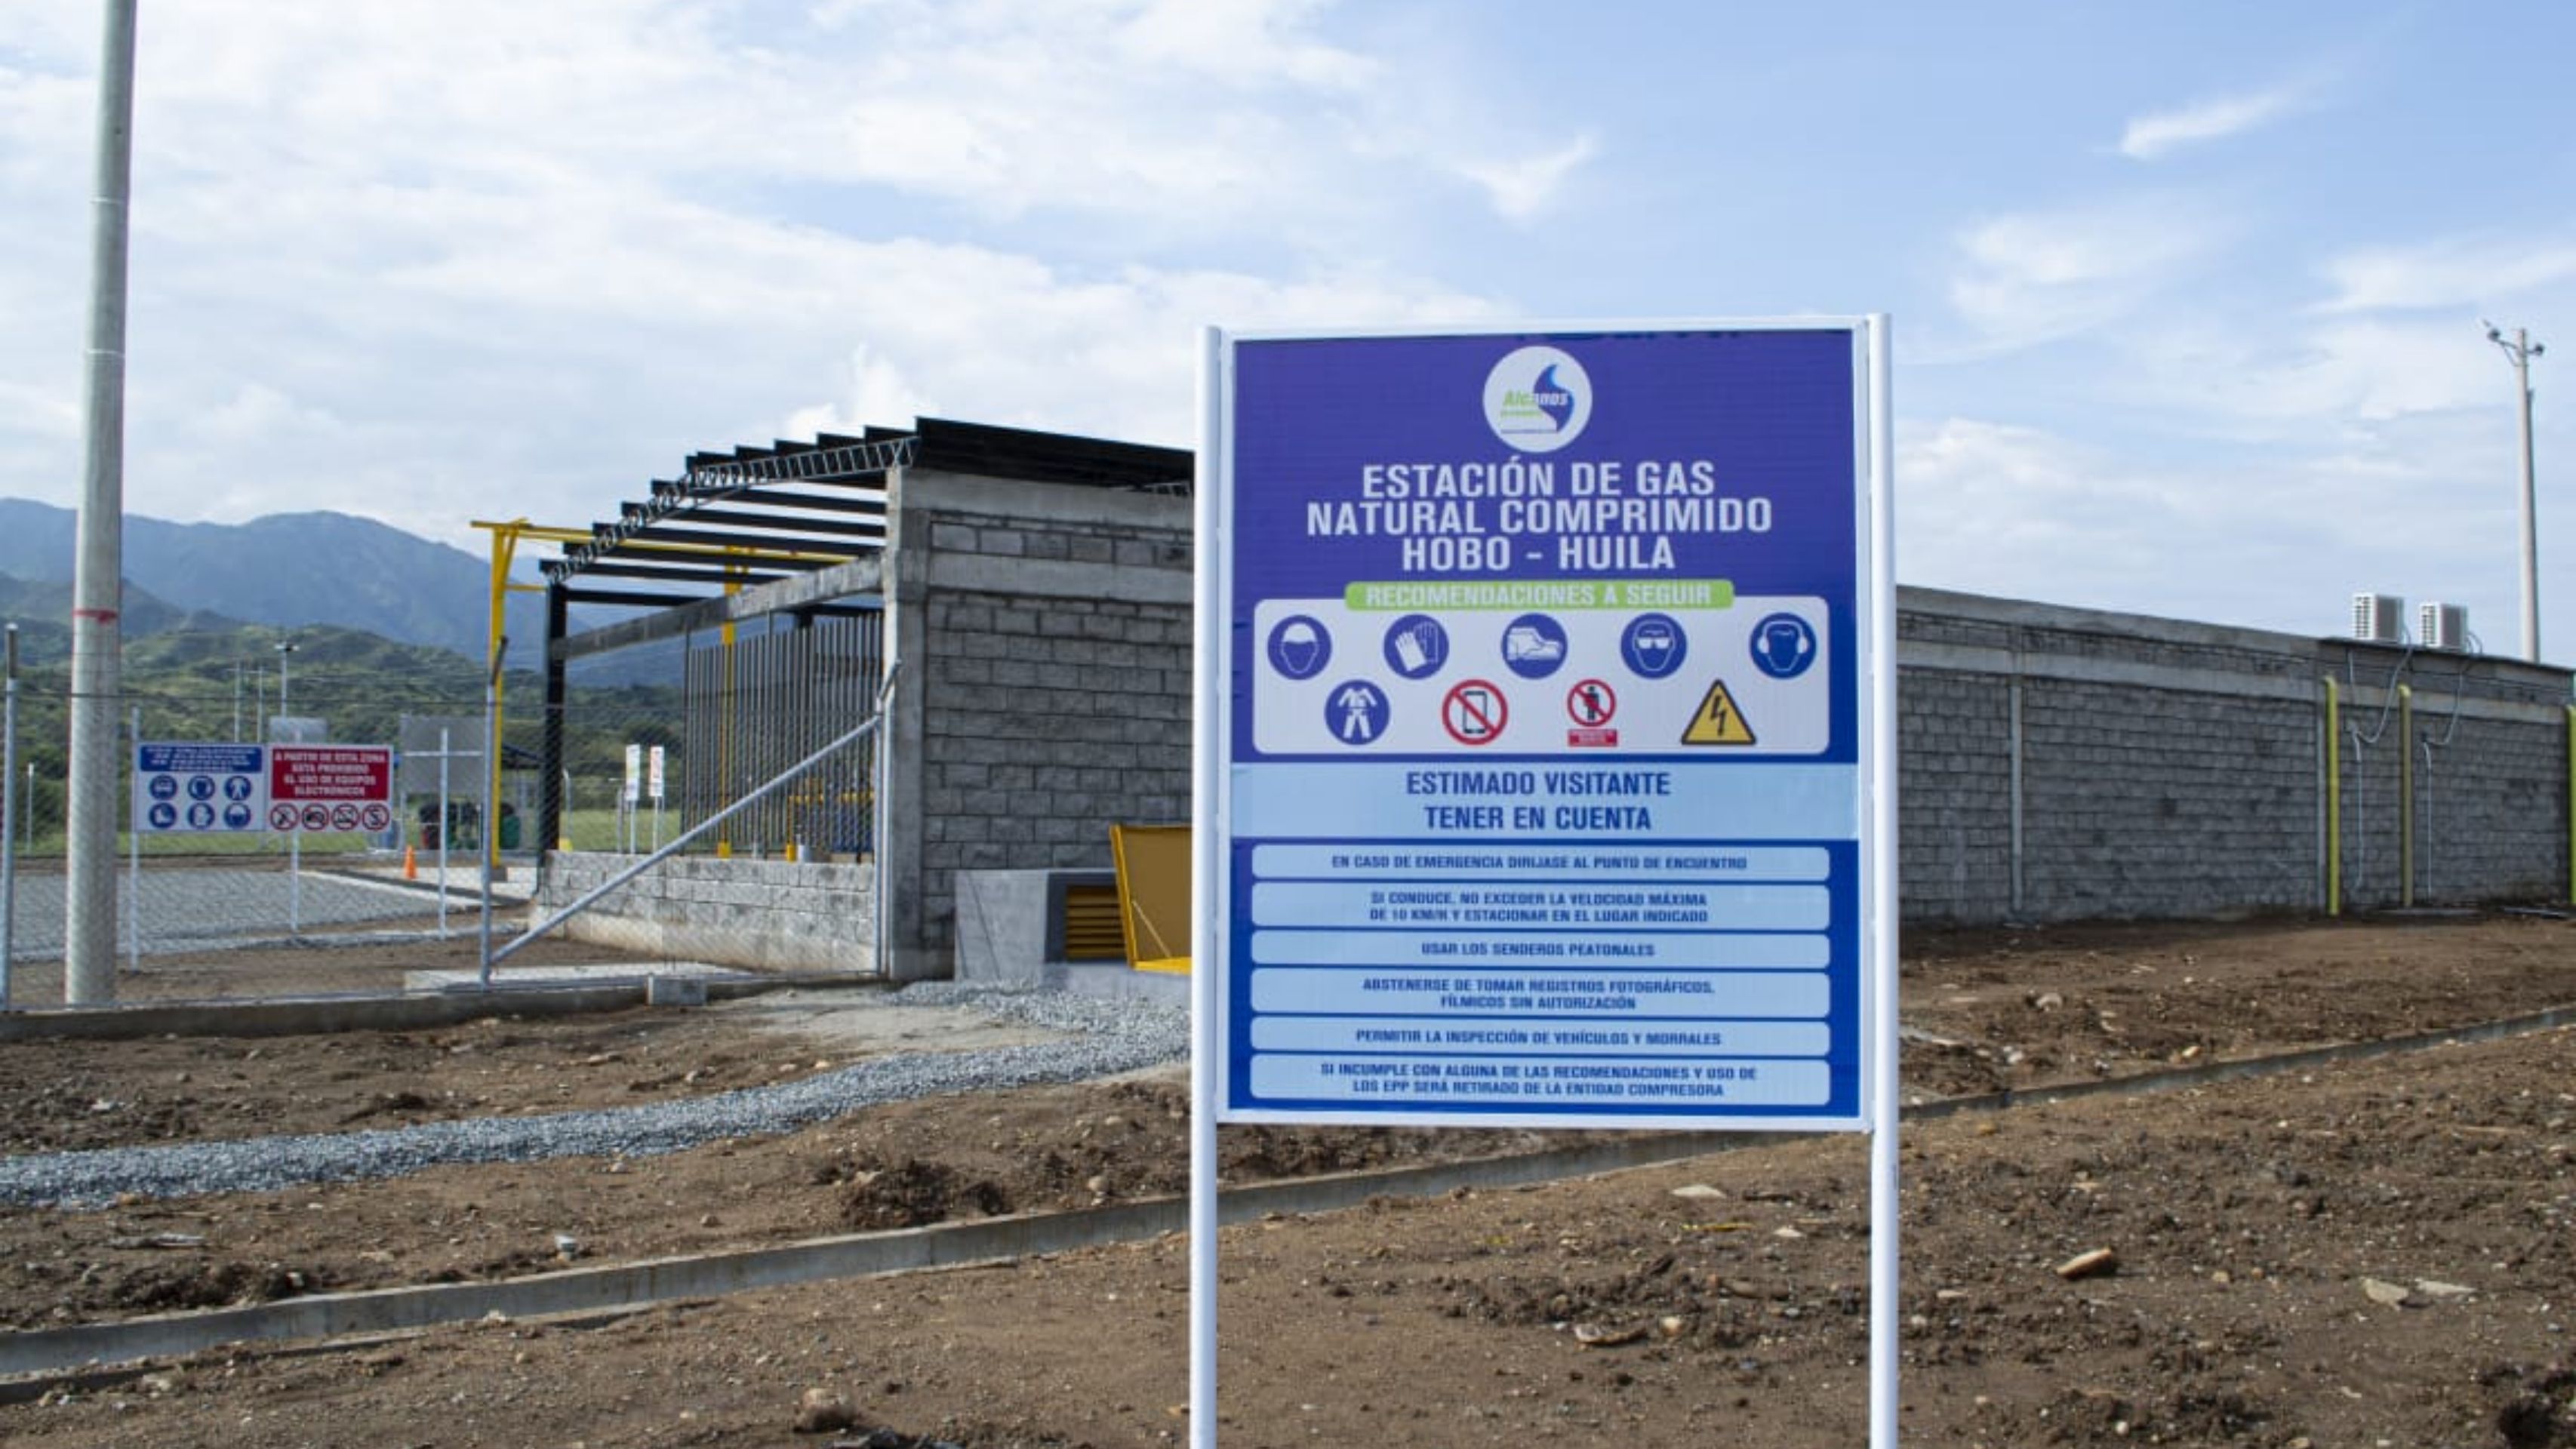 Nueva estación de gas natural en Hobo beneficia a los huilenses